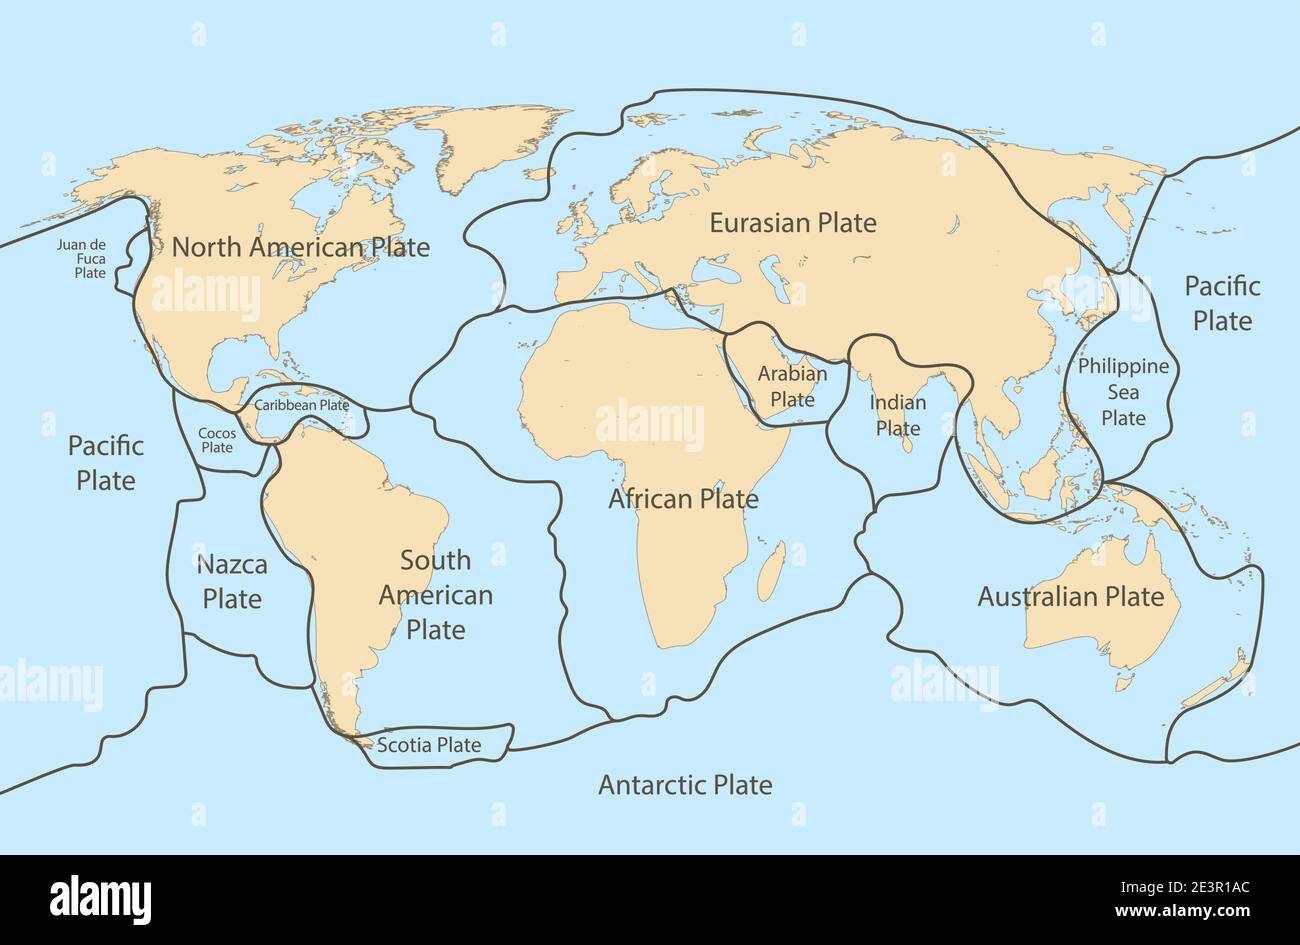 Carte de terre de la plaque tectonique. Océan continental pacifique, volcan lithosphère plaques géographiques Illustration de Vecteur